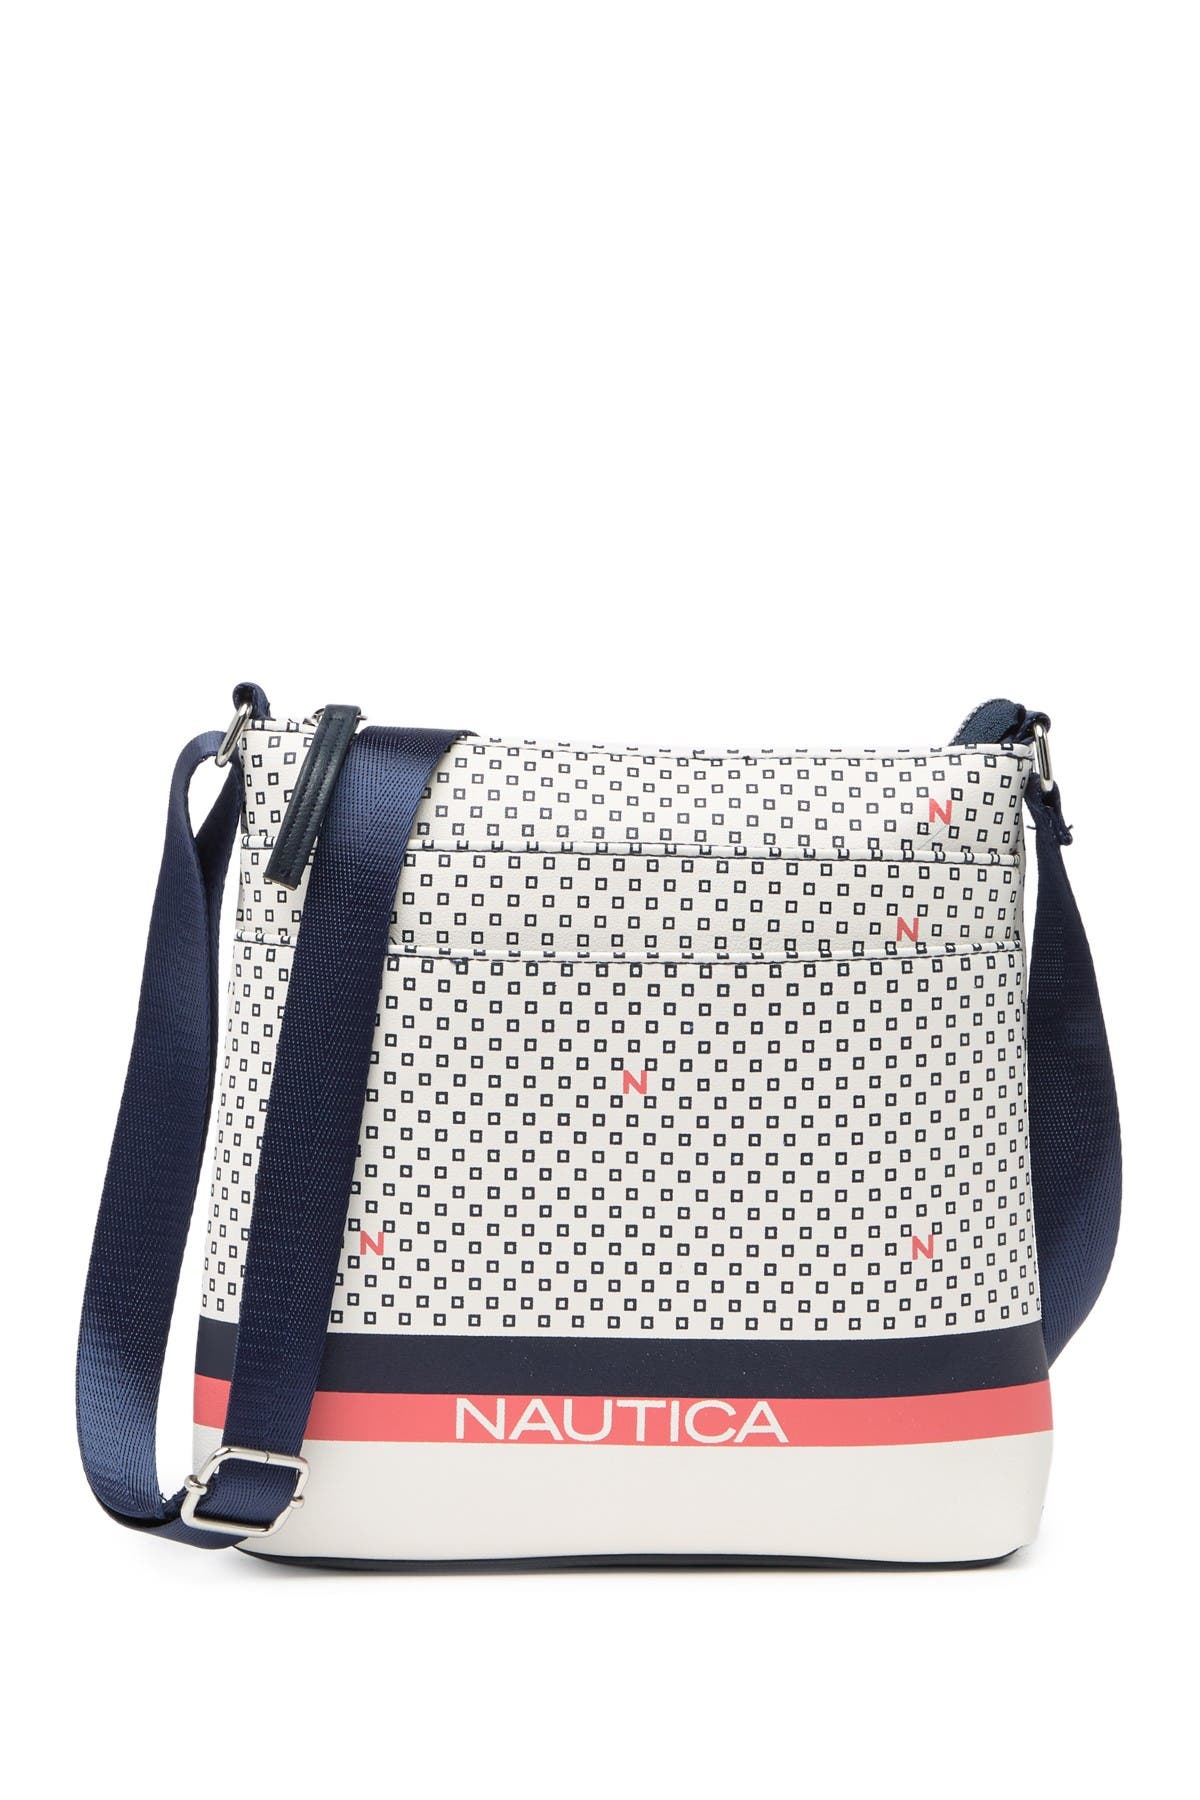 nautica crossbody bag